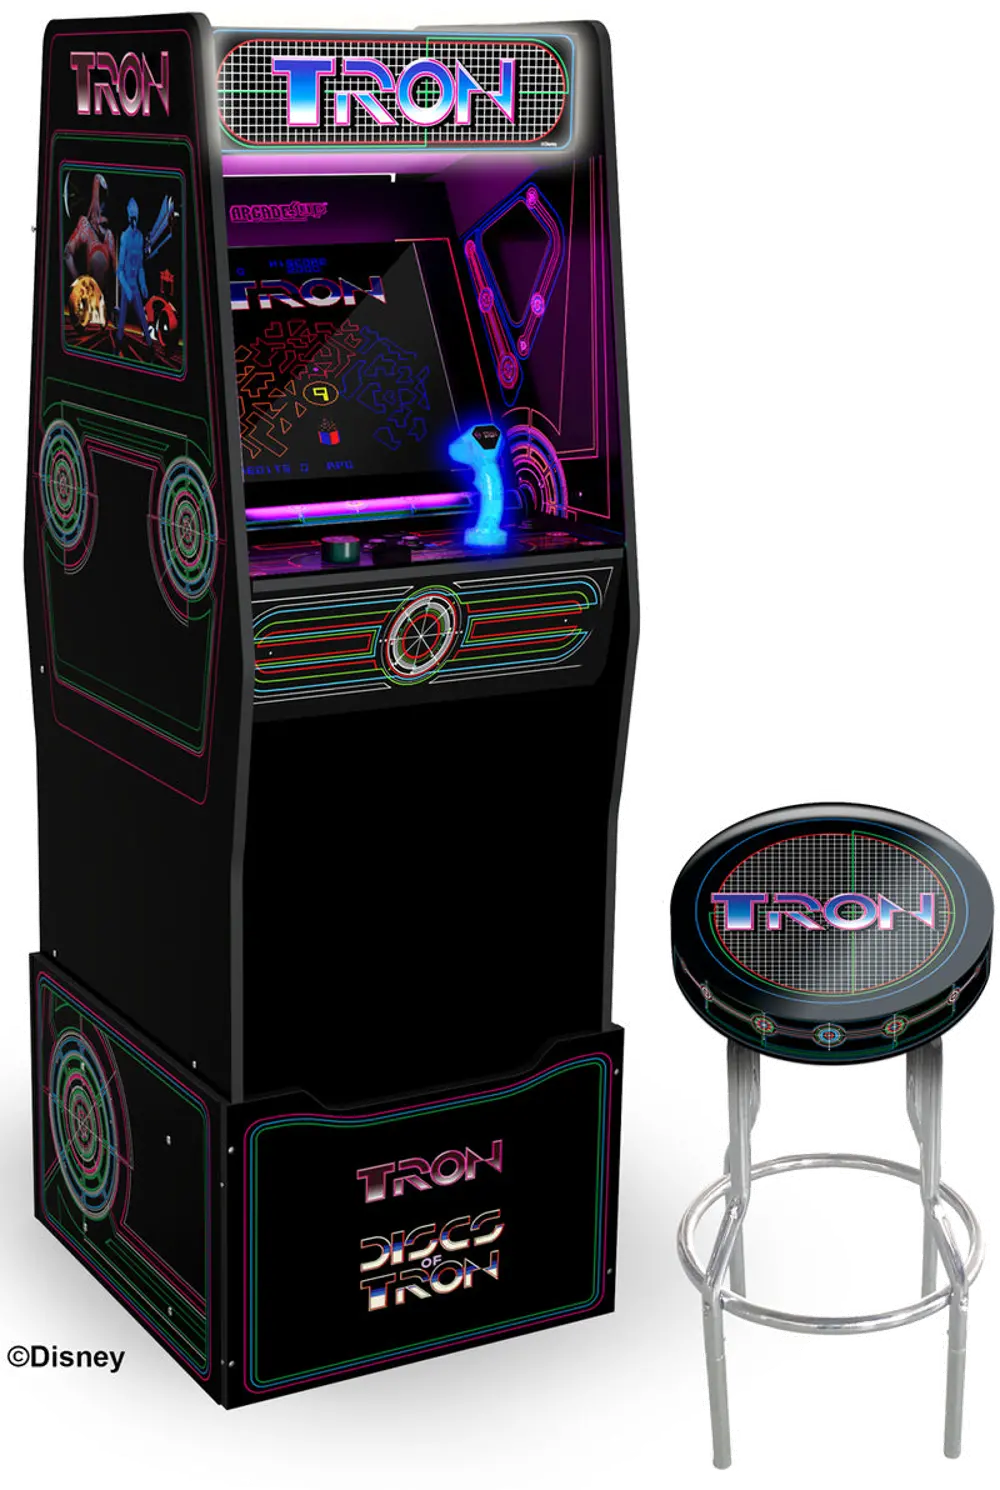 ARCADE1UP/TRON Arcade 1Up Tron Arcade Machine-1